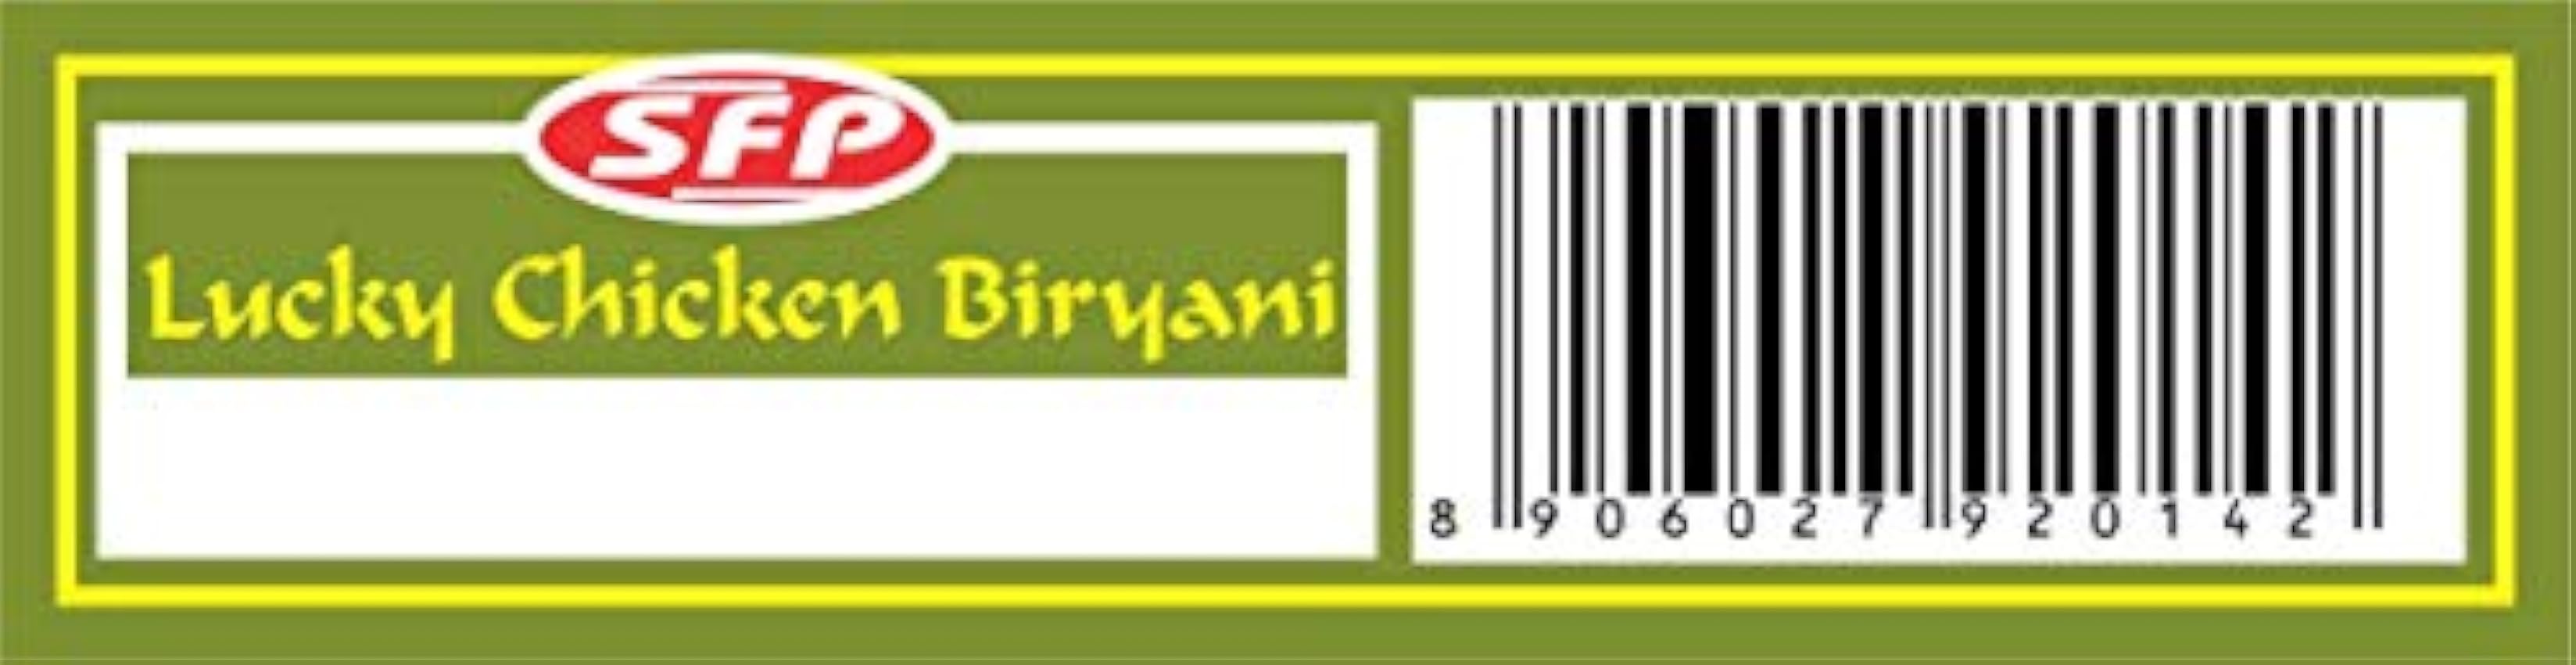 Pollo Mezcla de especias Biryani Masala 1.7 oz, Paquete de 5 jSTSjSyf